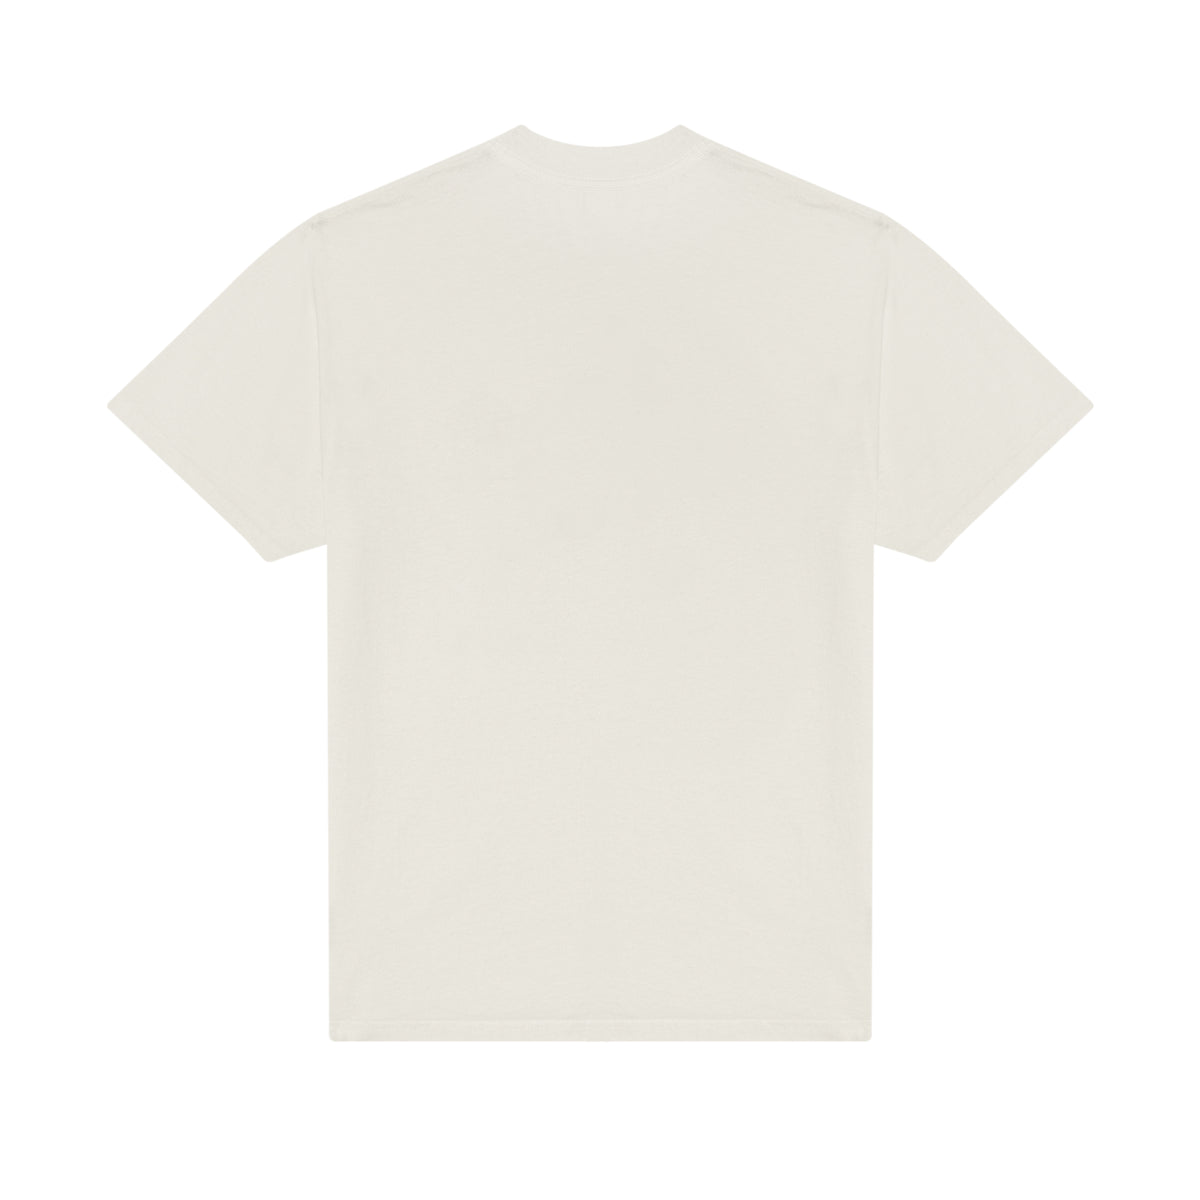 Astro Cheese 2 T-Shirt - Cream